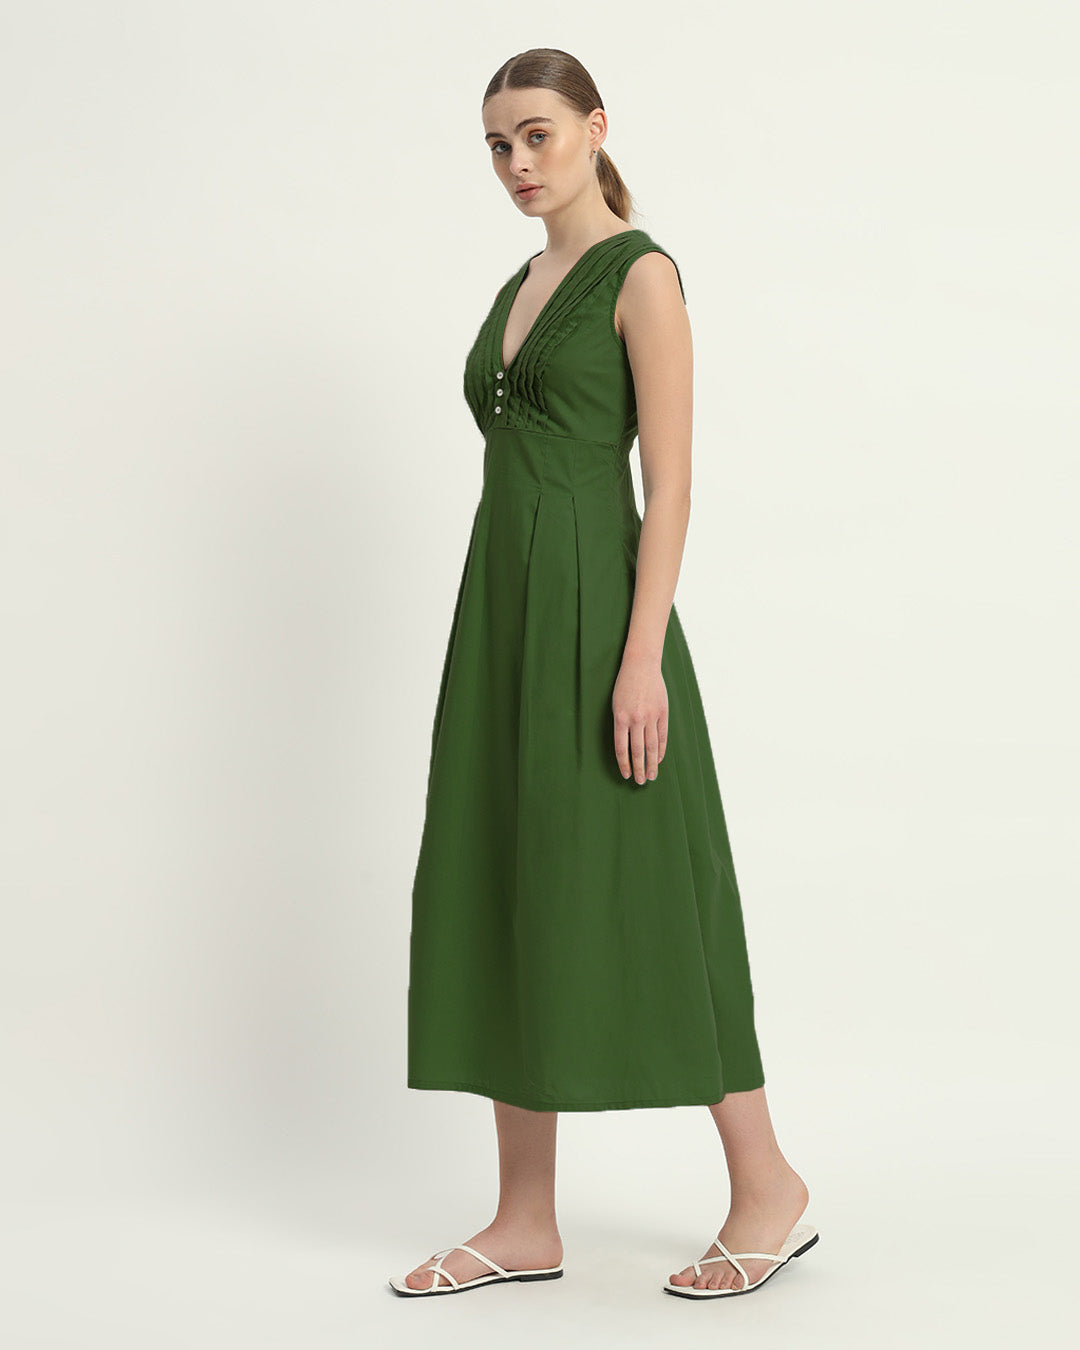 The Mendoza Emerald Cotton Dress